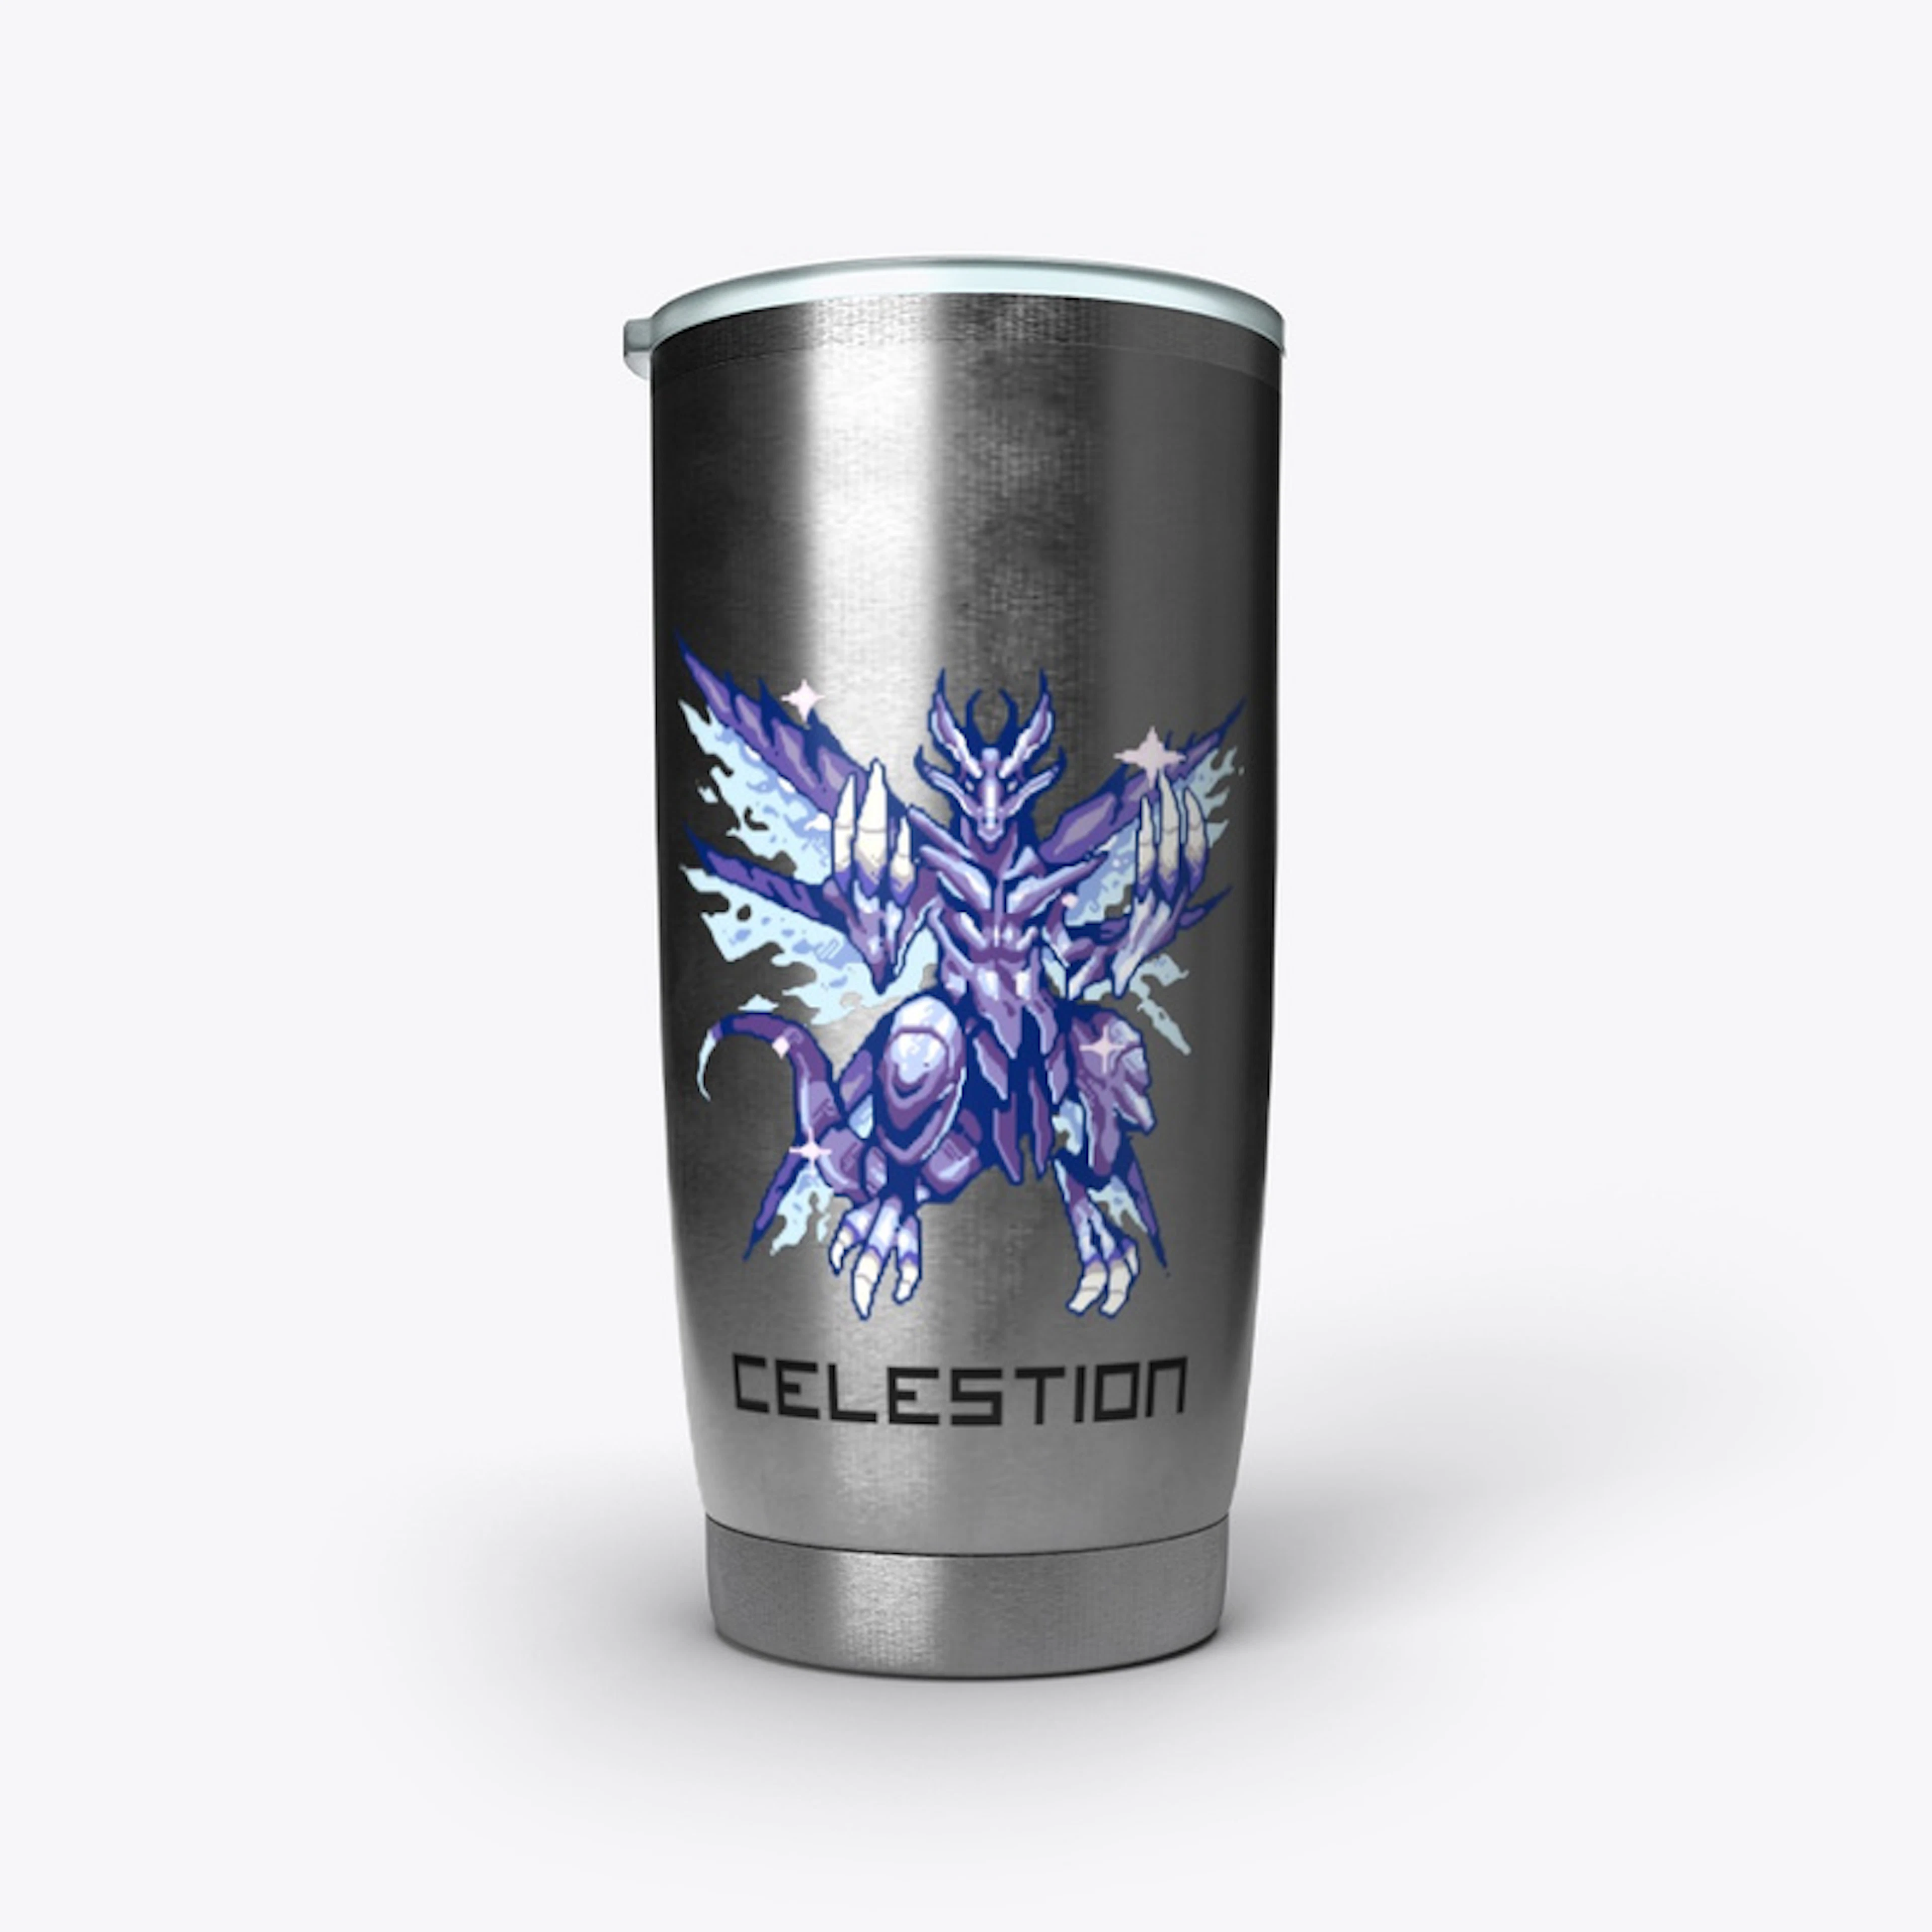 Celestion drink holder